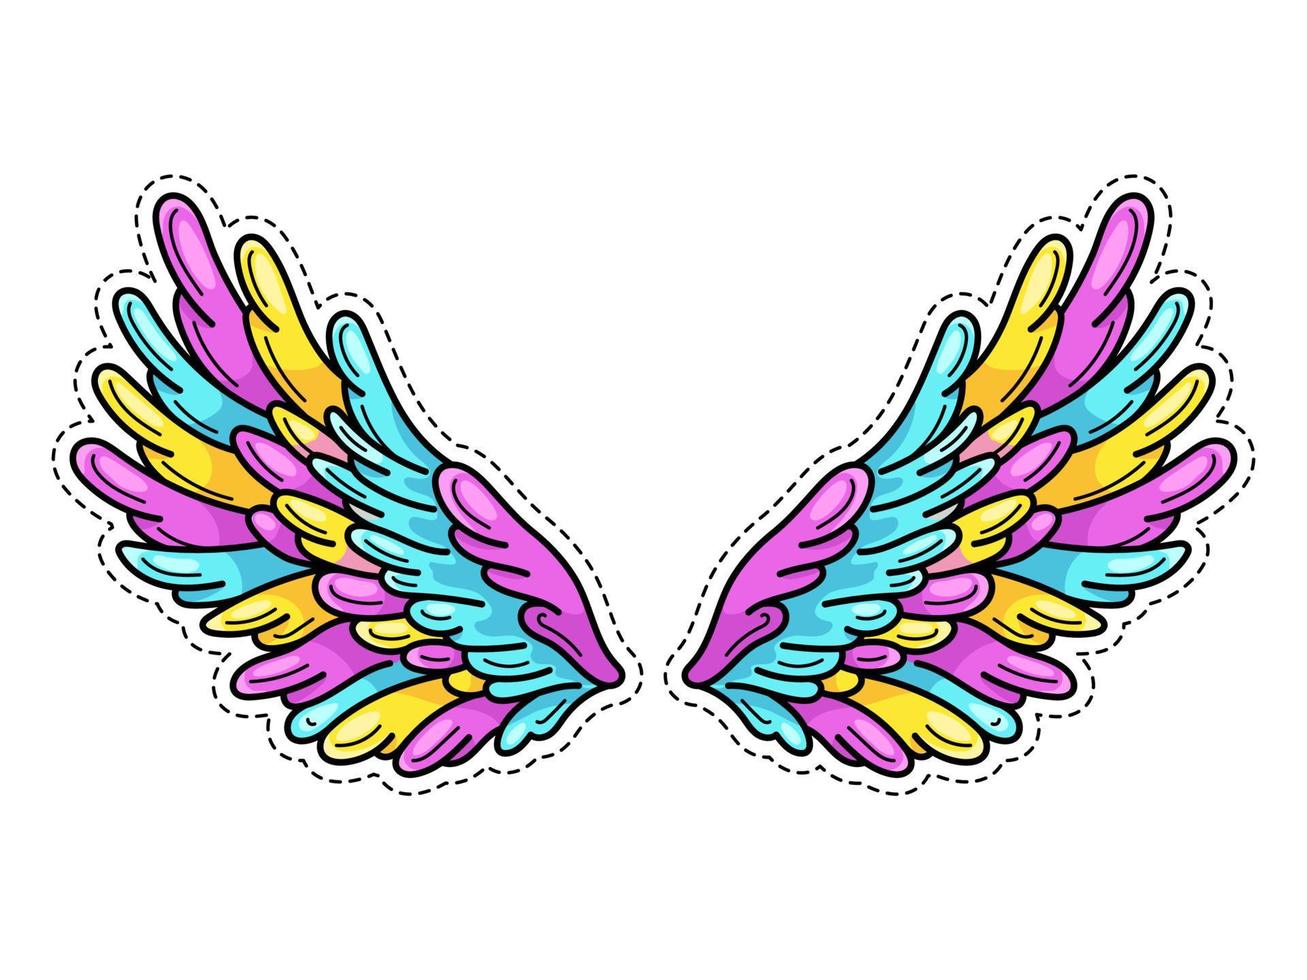 autocollant d'ailes magiques dans le style de bande dessinée pop art des années 80-90. ailes d'ange largement déployées. élément de patch à la mode rétro inspiré des vieux dessins animés. illustration vectorielle isolée sur blanc. vecteur